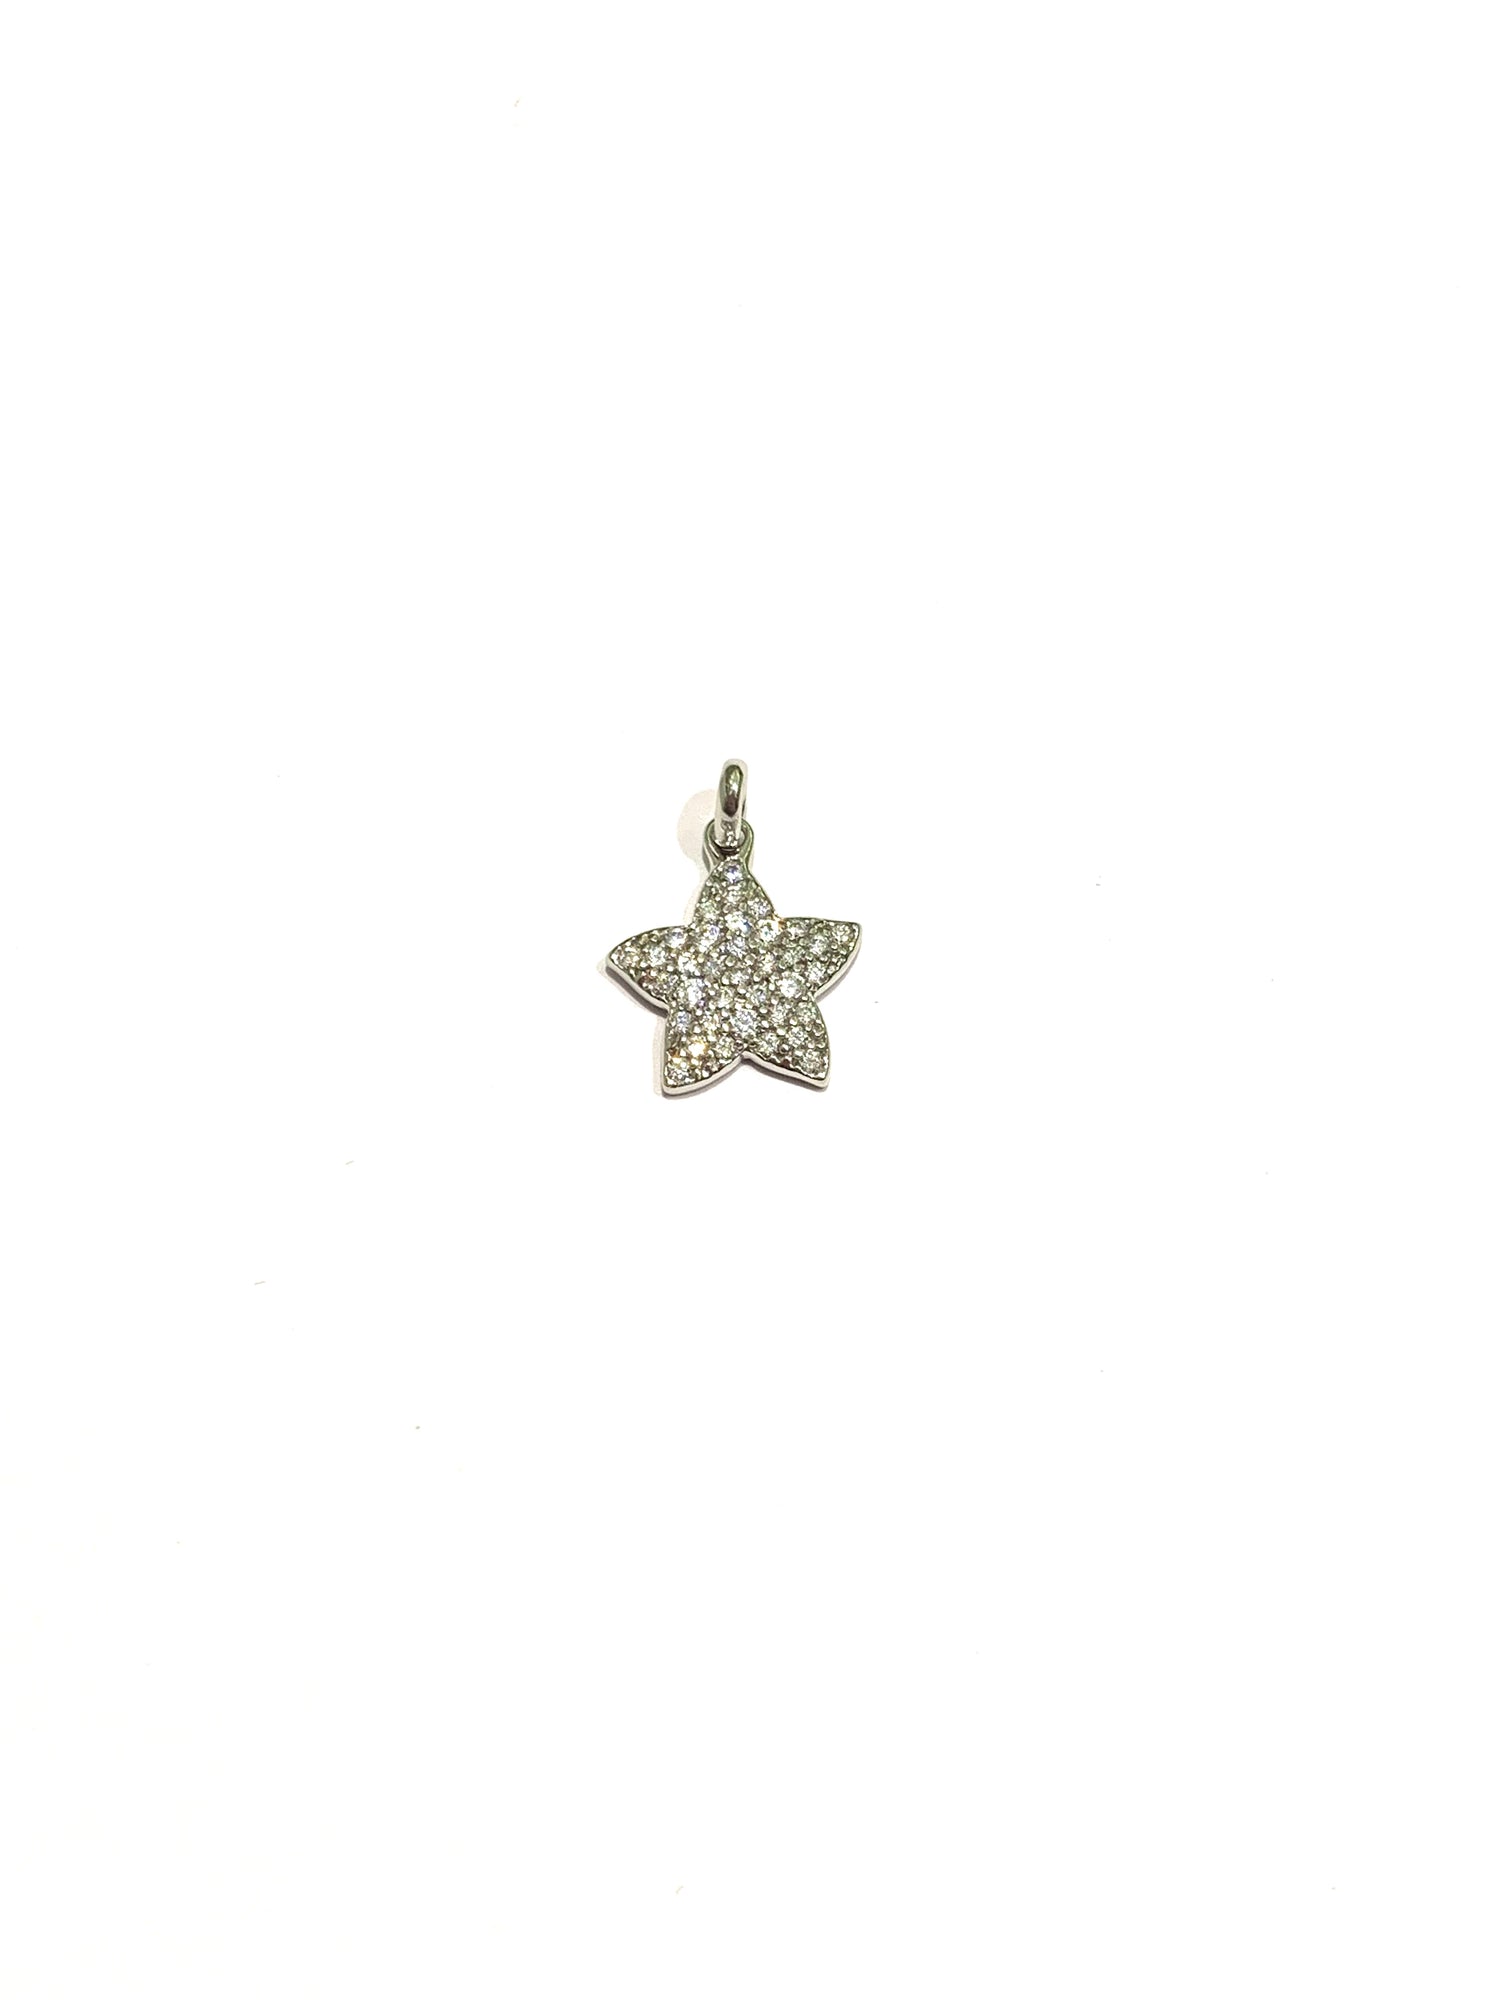 Ciondolo per collana in oro bianco 18kt con stella ricoperta interamente da zirconi.  Dimensione 1,4 cm.